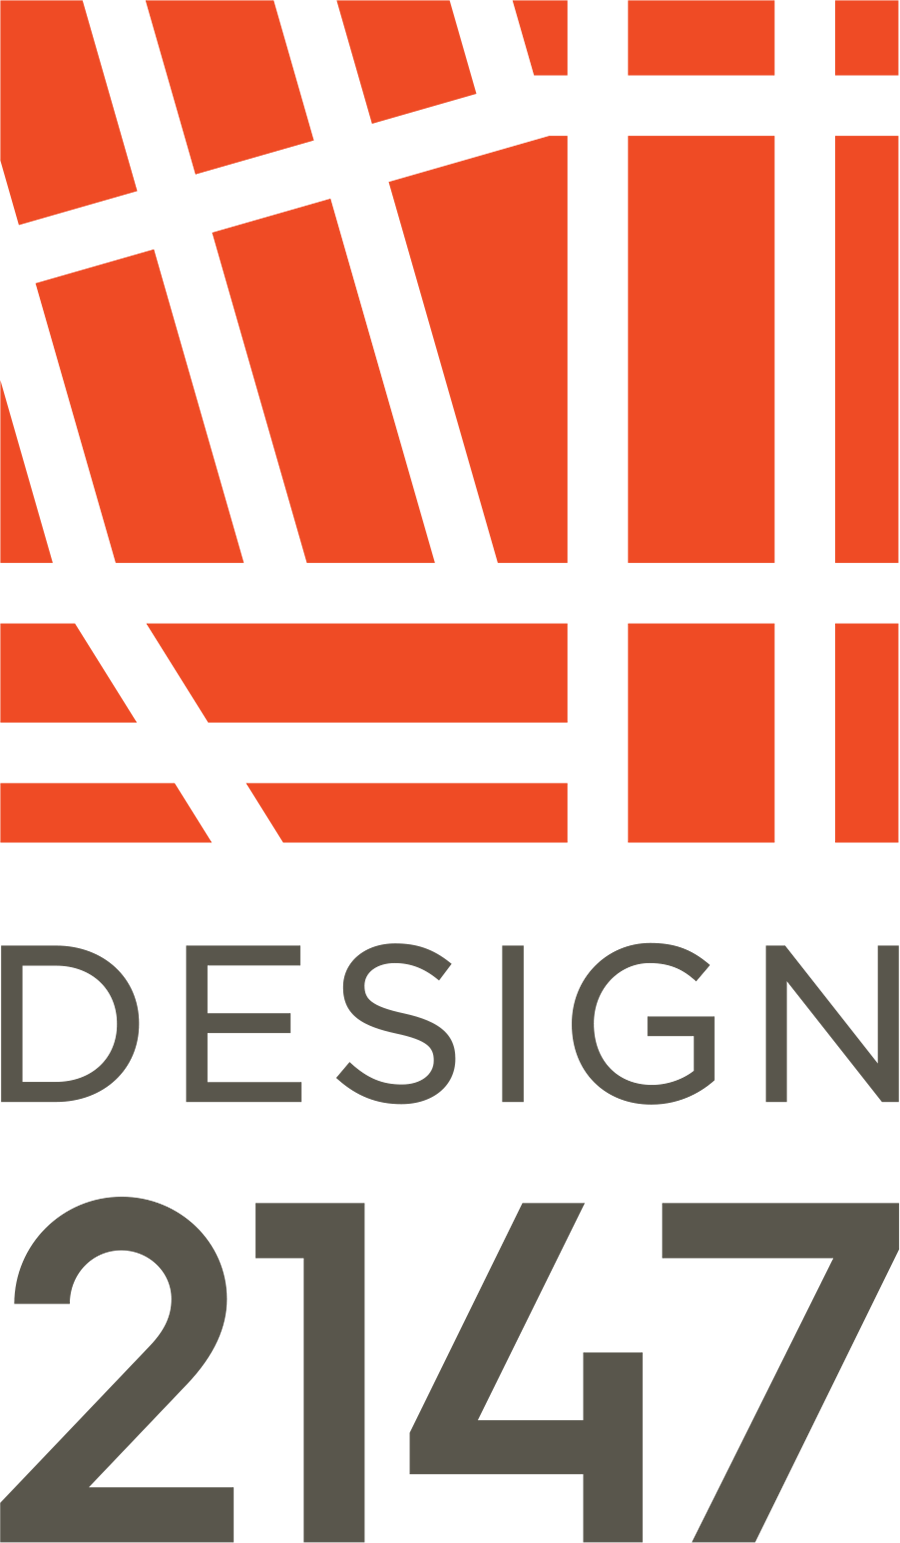 Design2147 - Design 2147, Ltd. (900x1543)